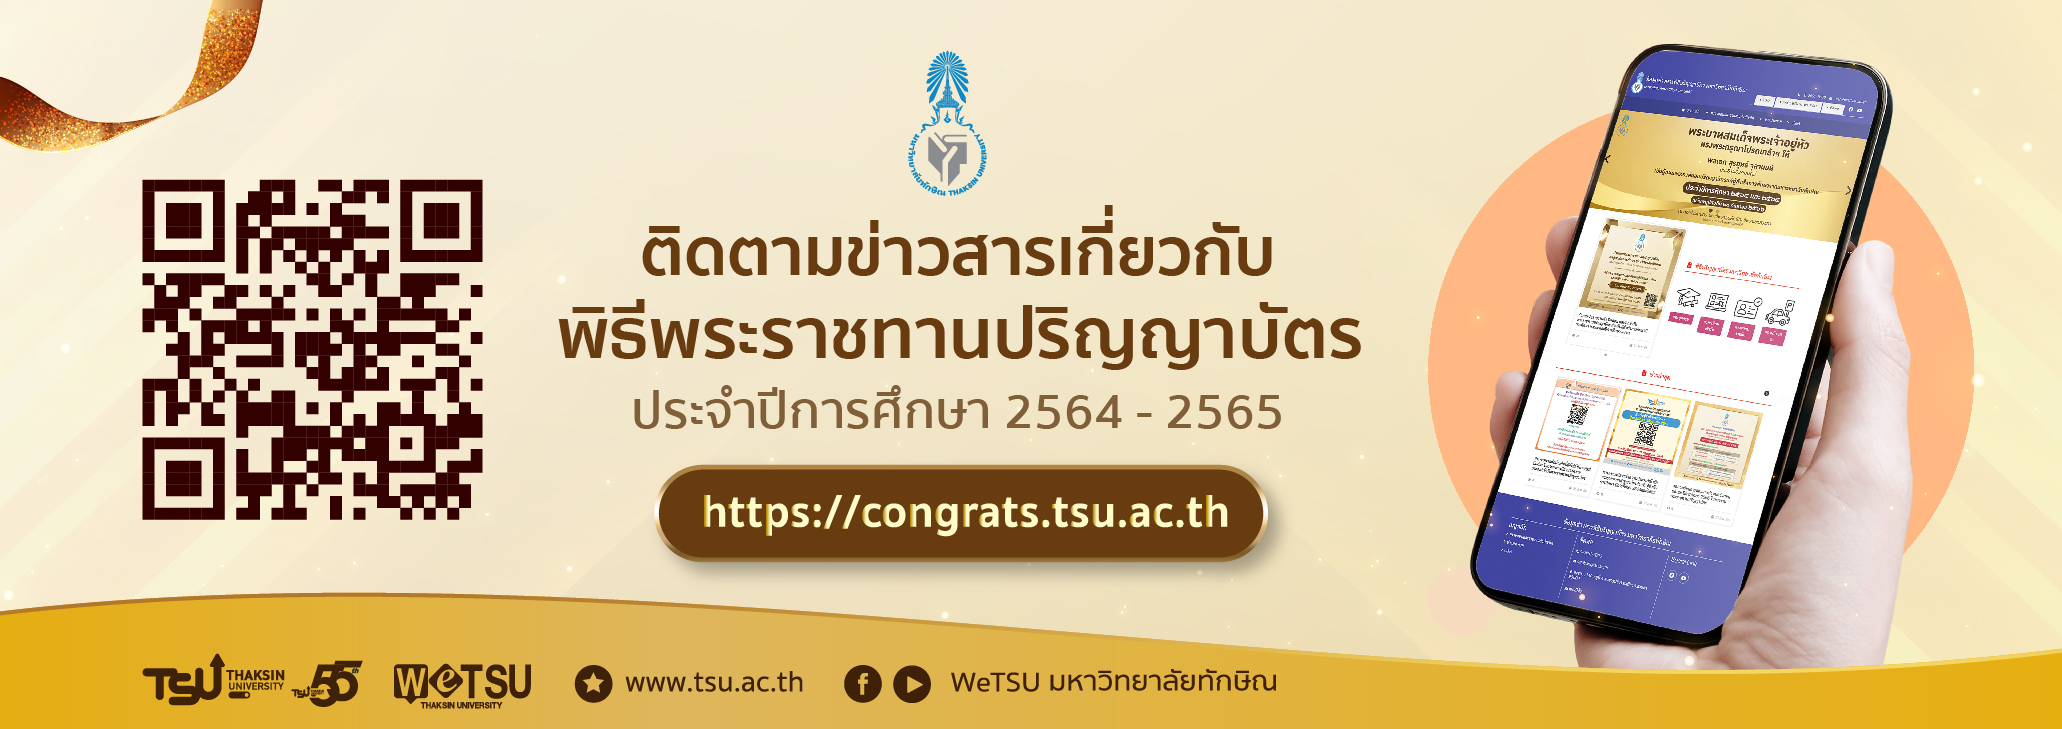 เว็บไซต์ข่าวสารพิธีพระราชทานปริญญาบัตร ประจำปีการศึกษา 2564-2565